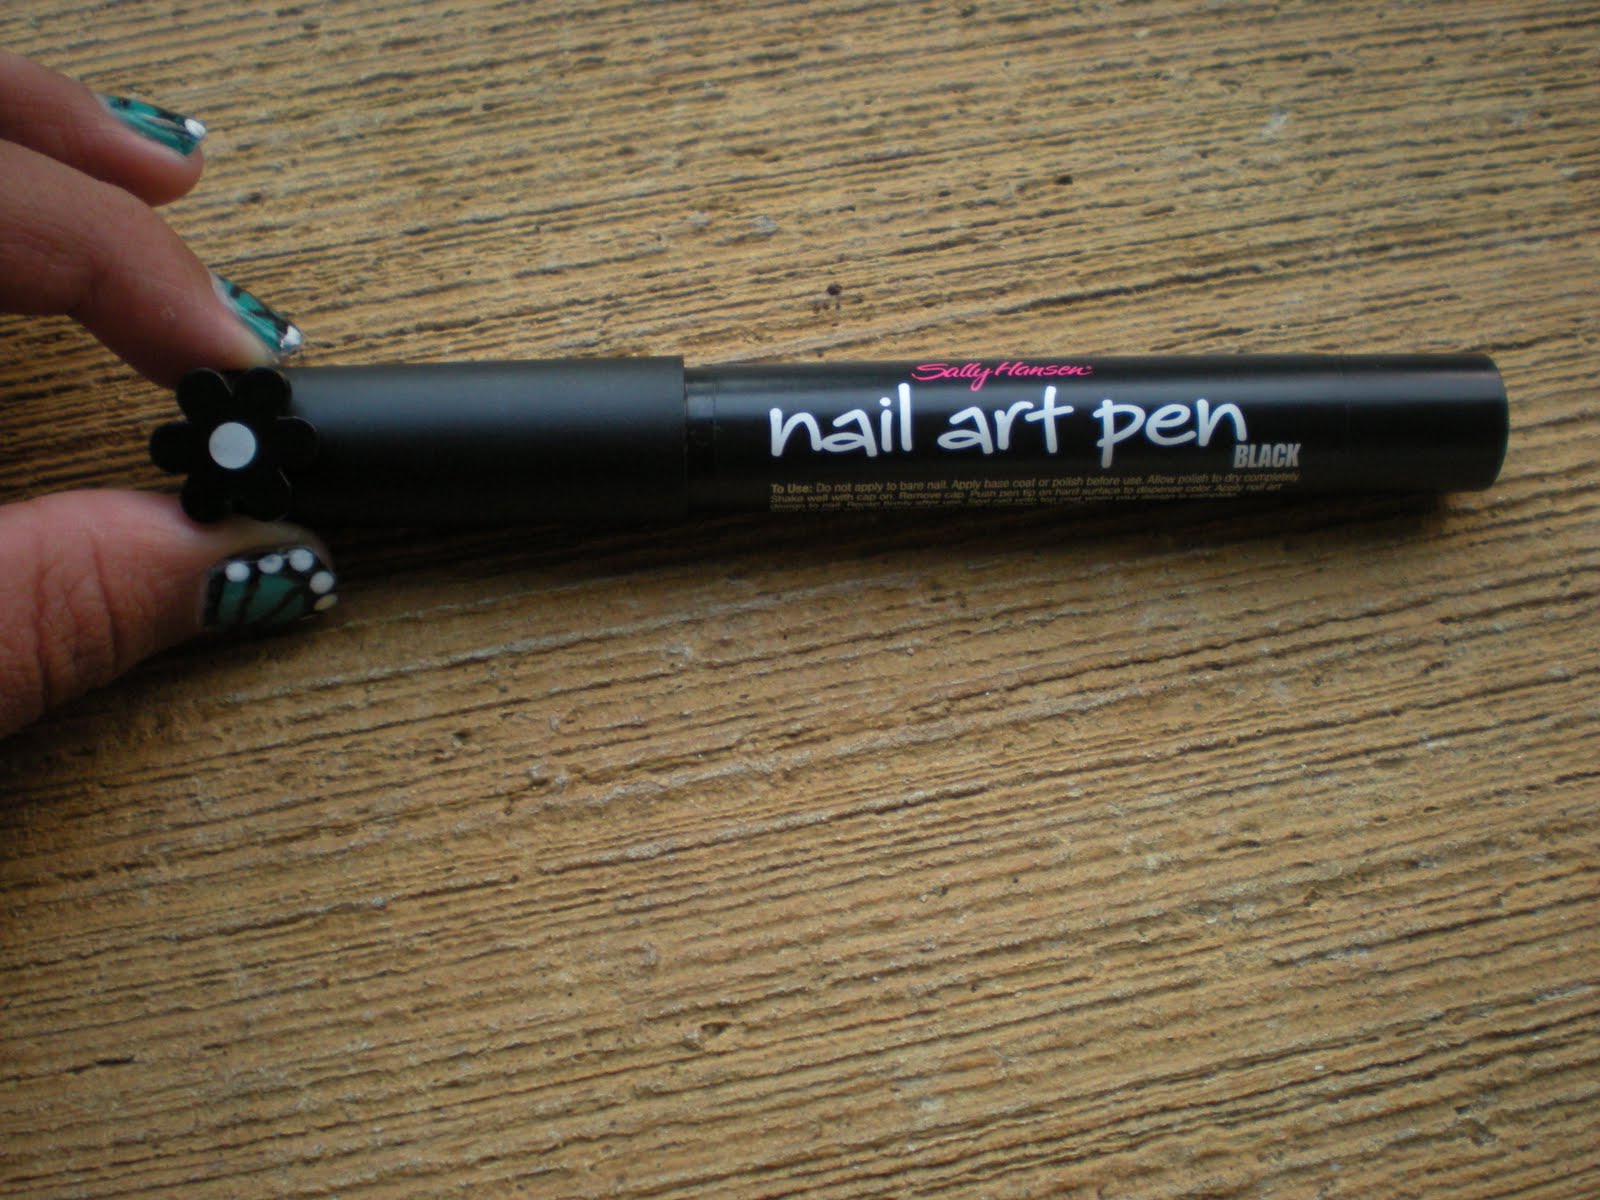 hansen nail art pen